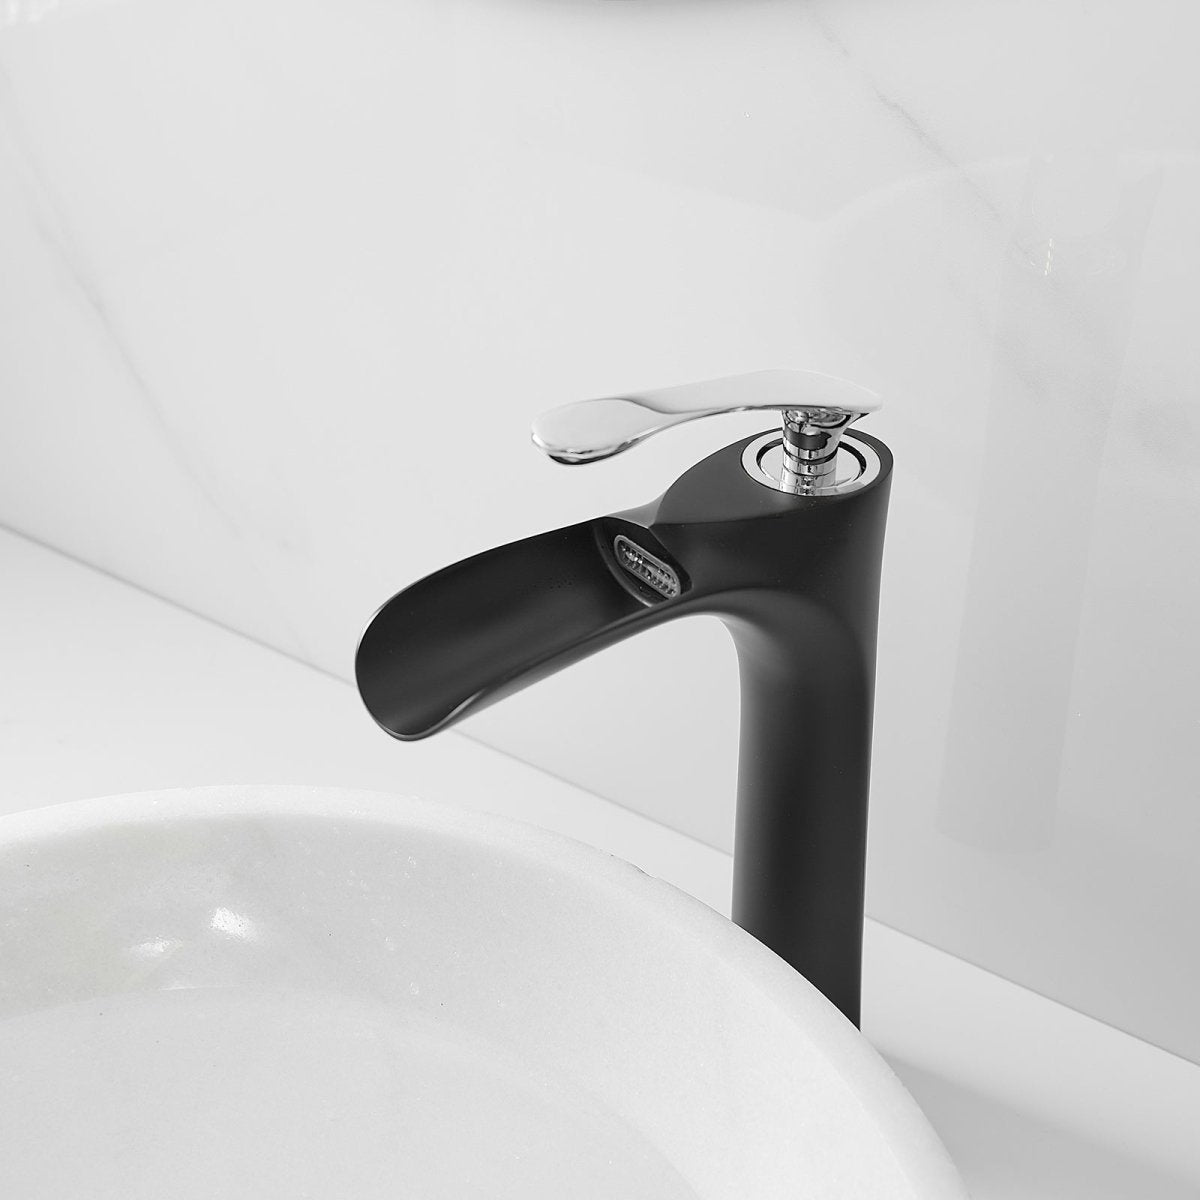 Single Handle without Overflow Bathroom Faucet Black Chrome - buyfaucet.com